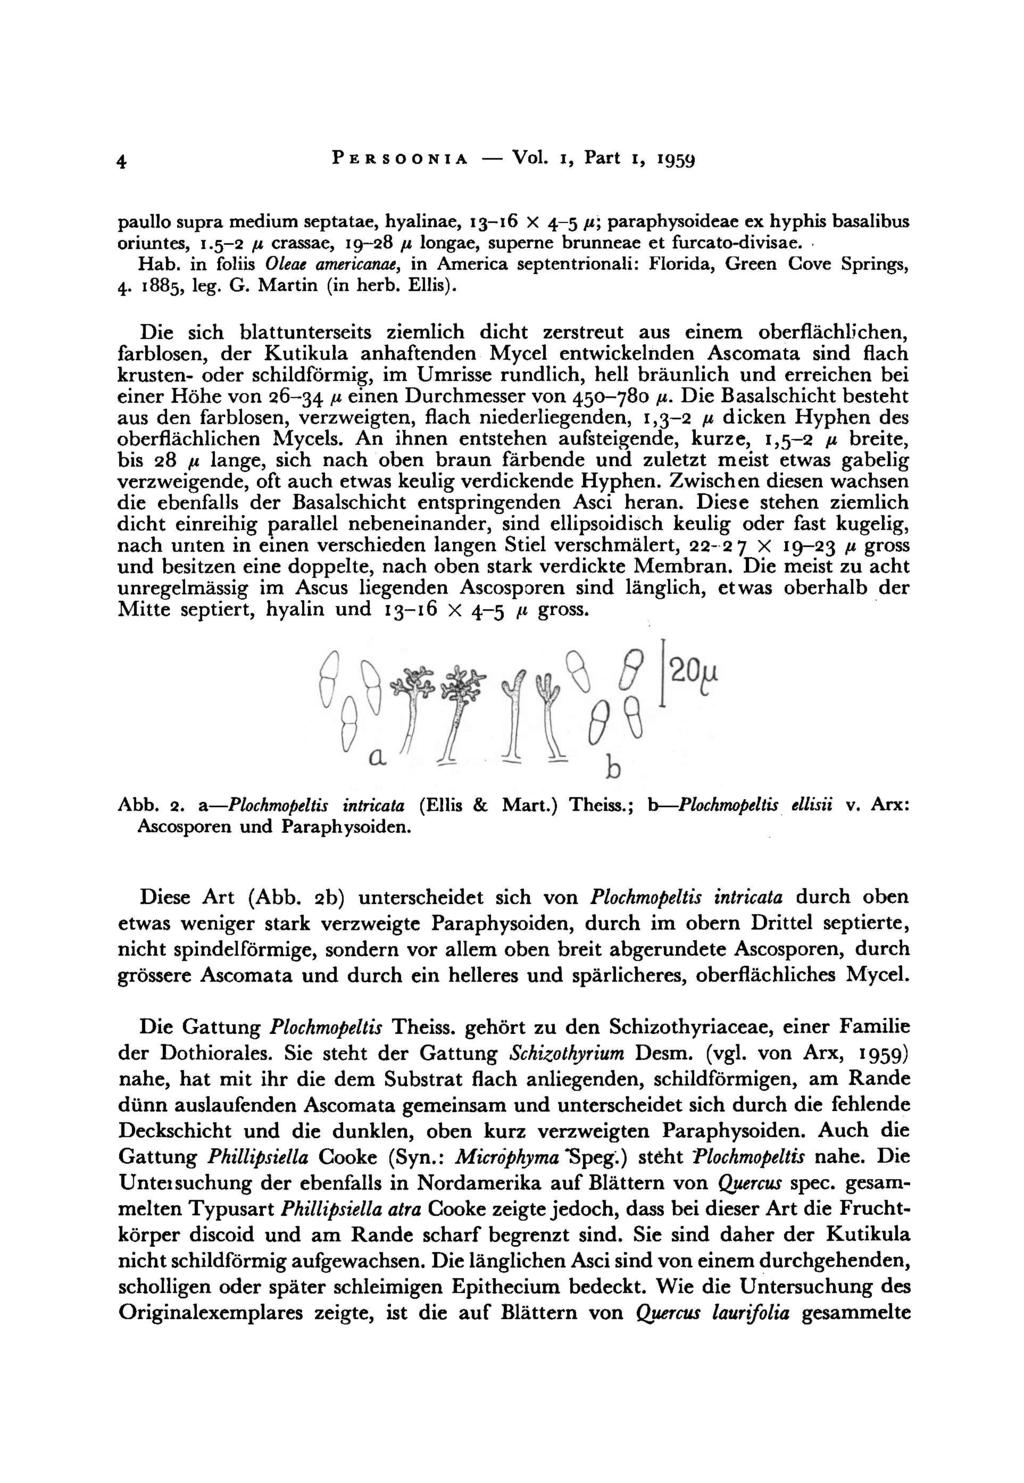 4 Persoonia Vol. i, Part i, 1959 paullo medium supra septatae, hyalinae, 13-16 x 4-5 ß\ paraphysoideae ex hyphis basalibus oriuntes, 1.5-2 /j.